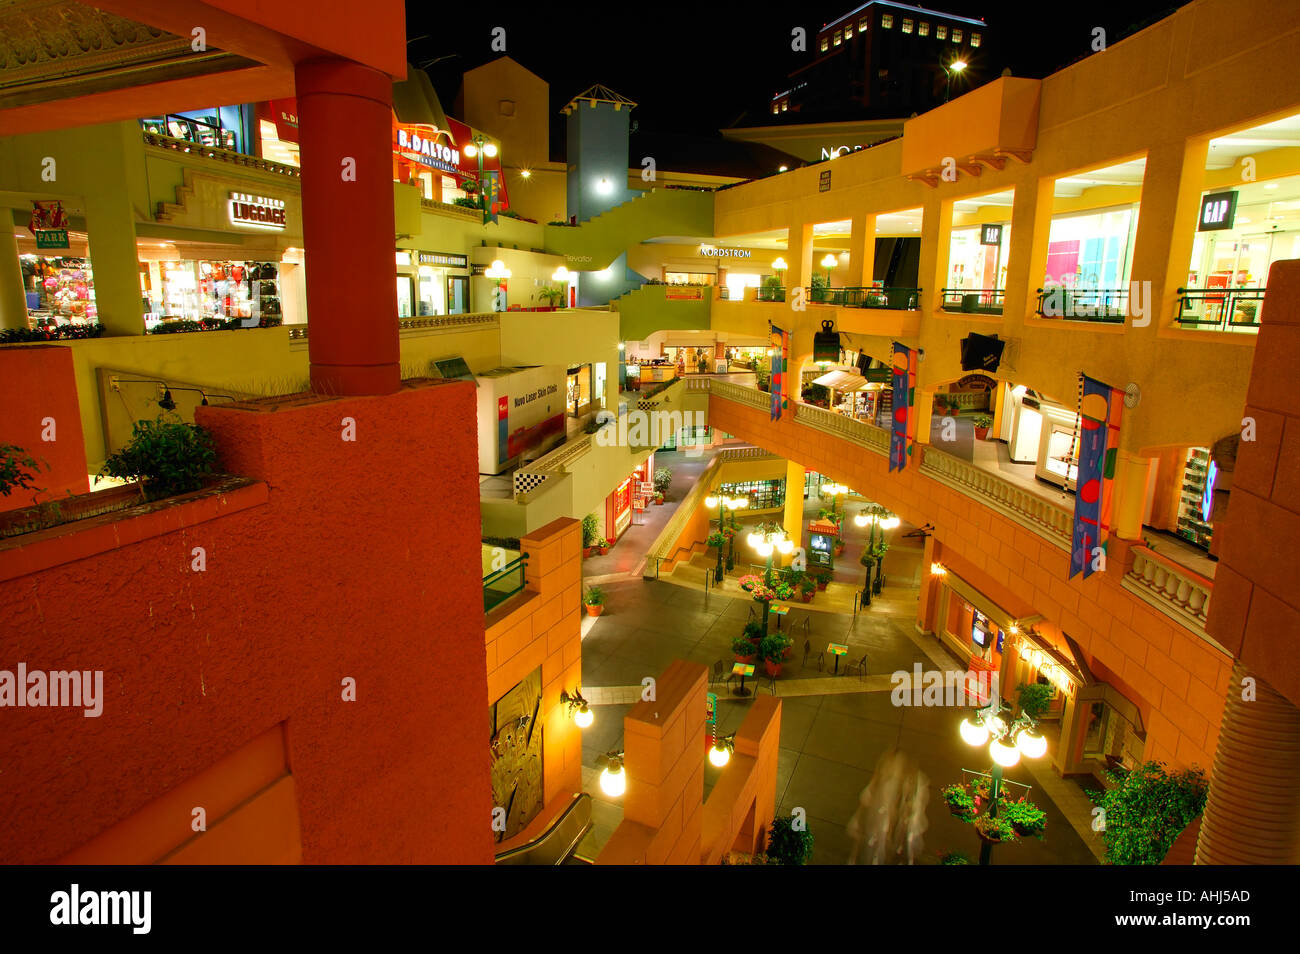 Horton Plaza Shopping Mall Downtown San Diego California Stock Photo